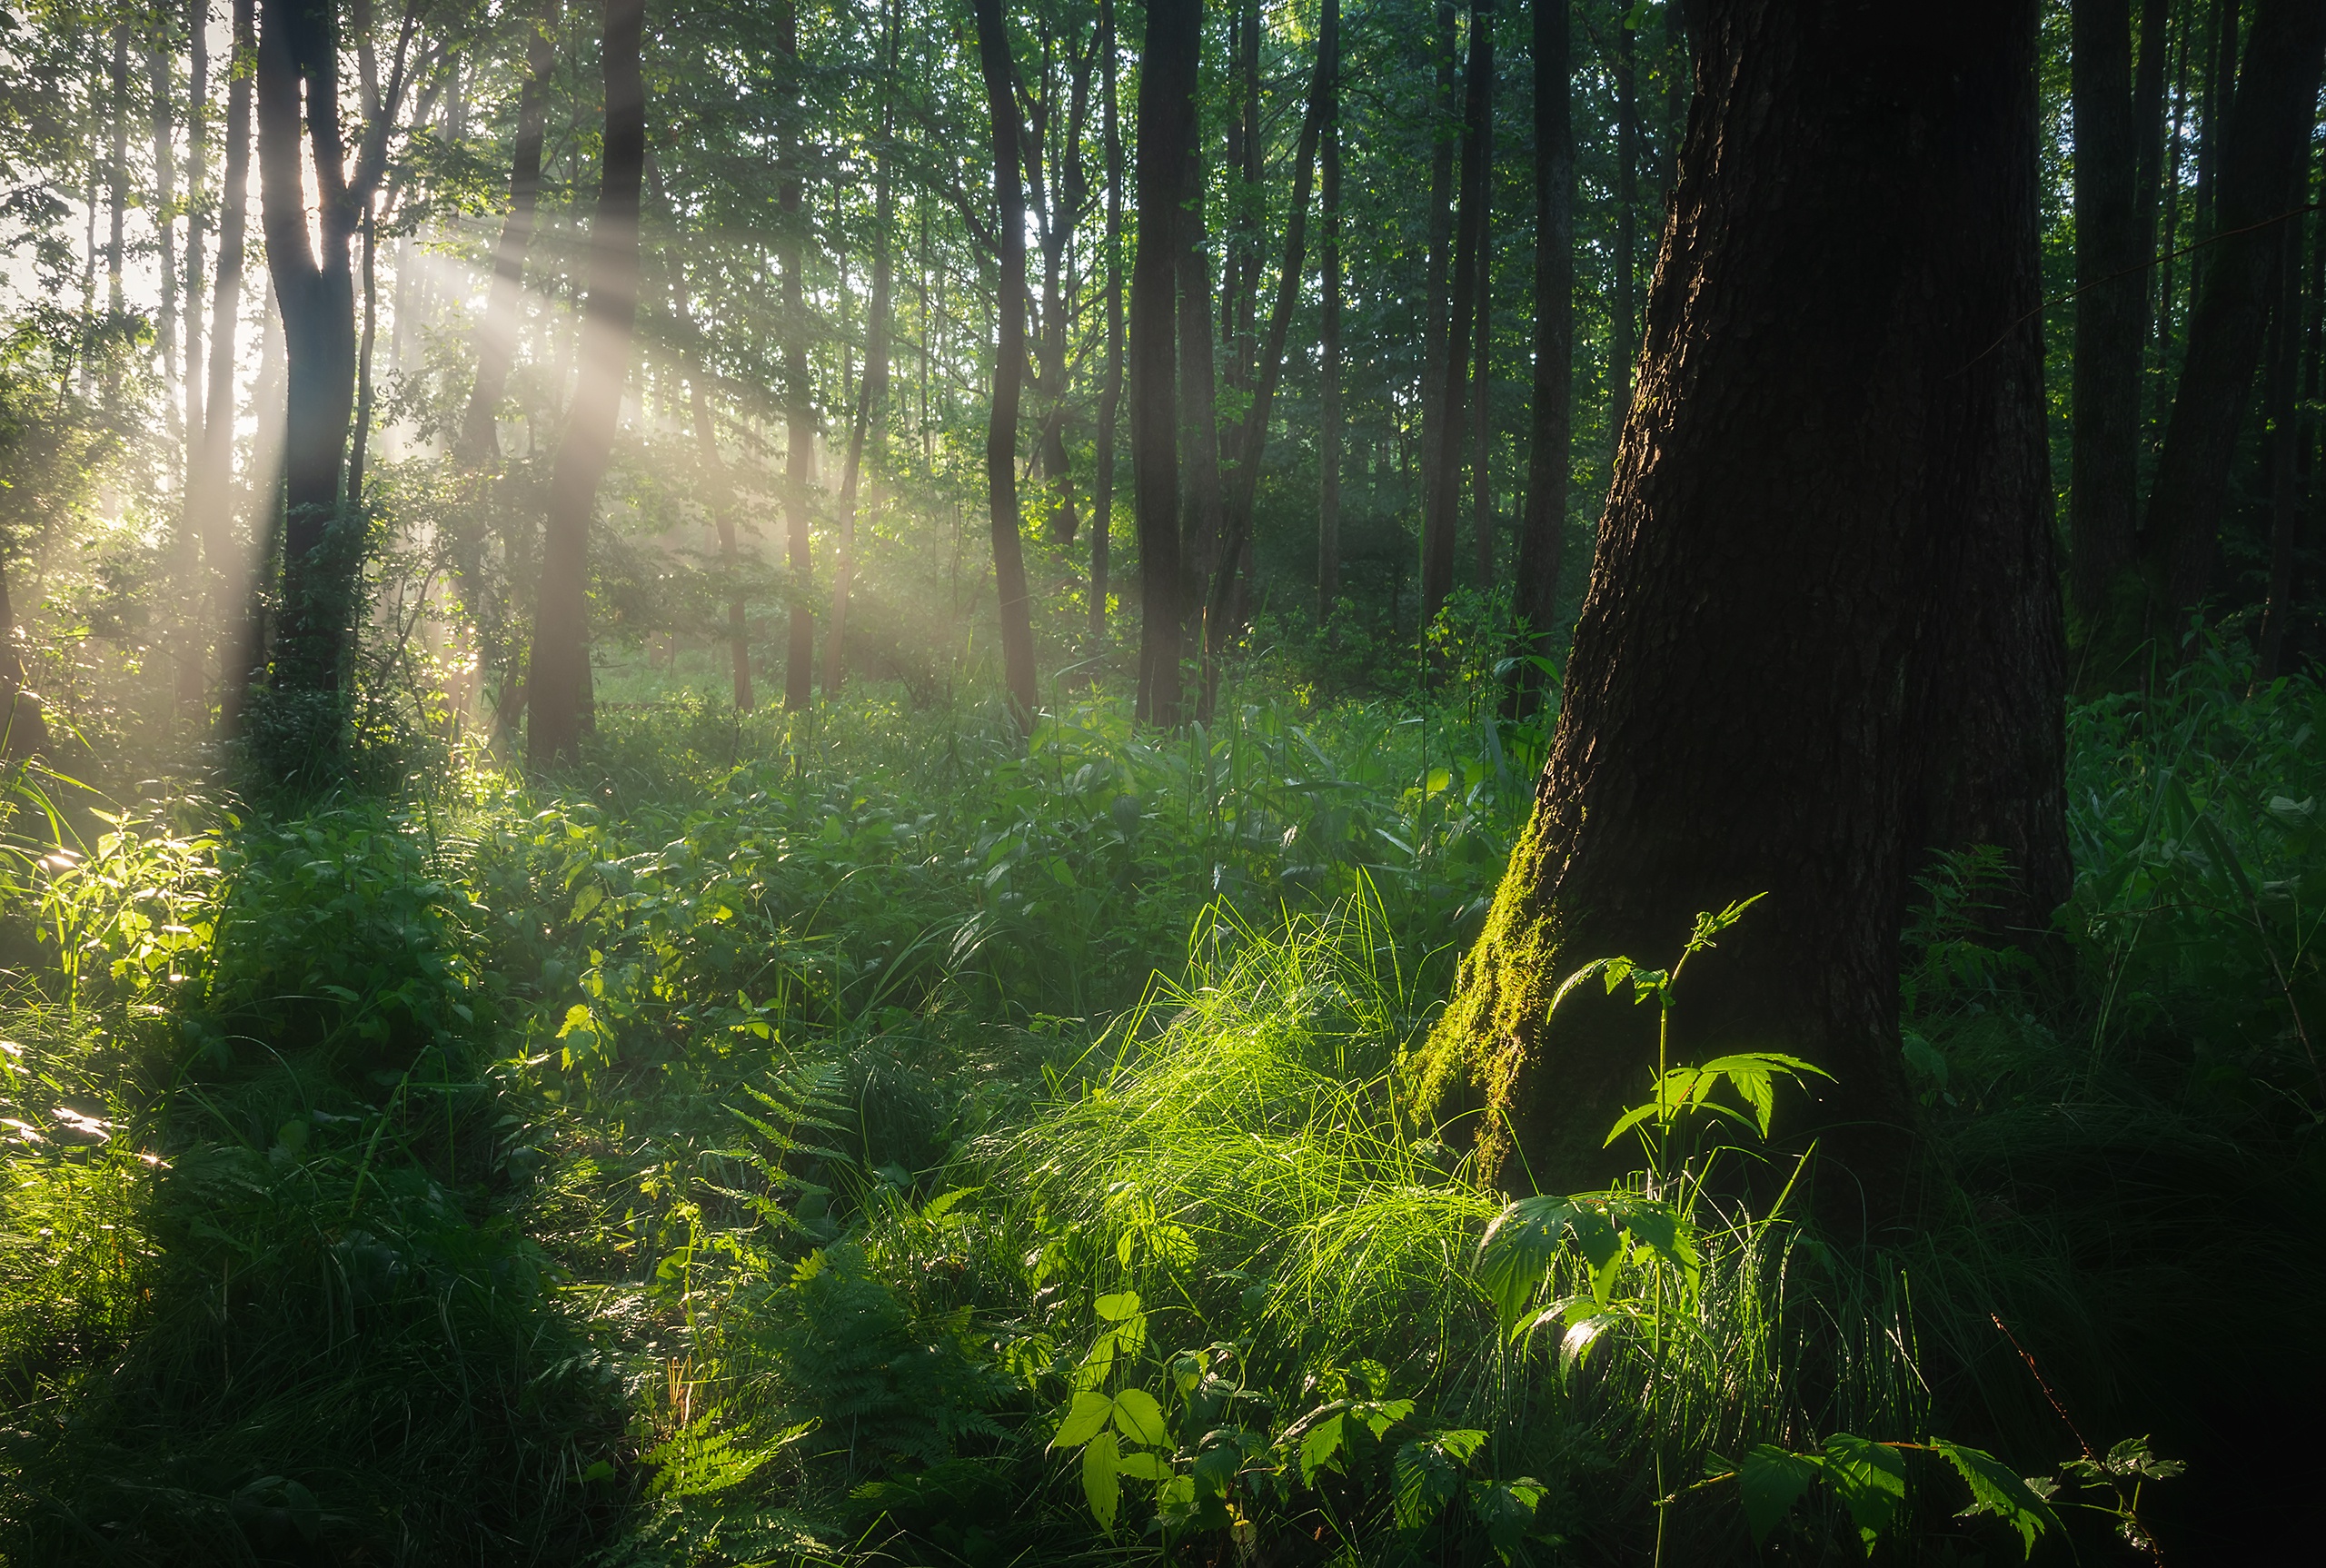 Обоя зелёный лес. Роль света в лесу. Фото с хорошим освещением лес. Лес свет от смотрителя. Новый свет лесной